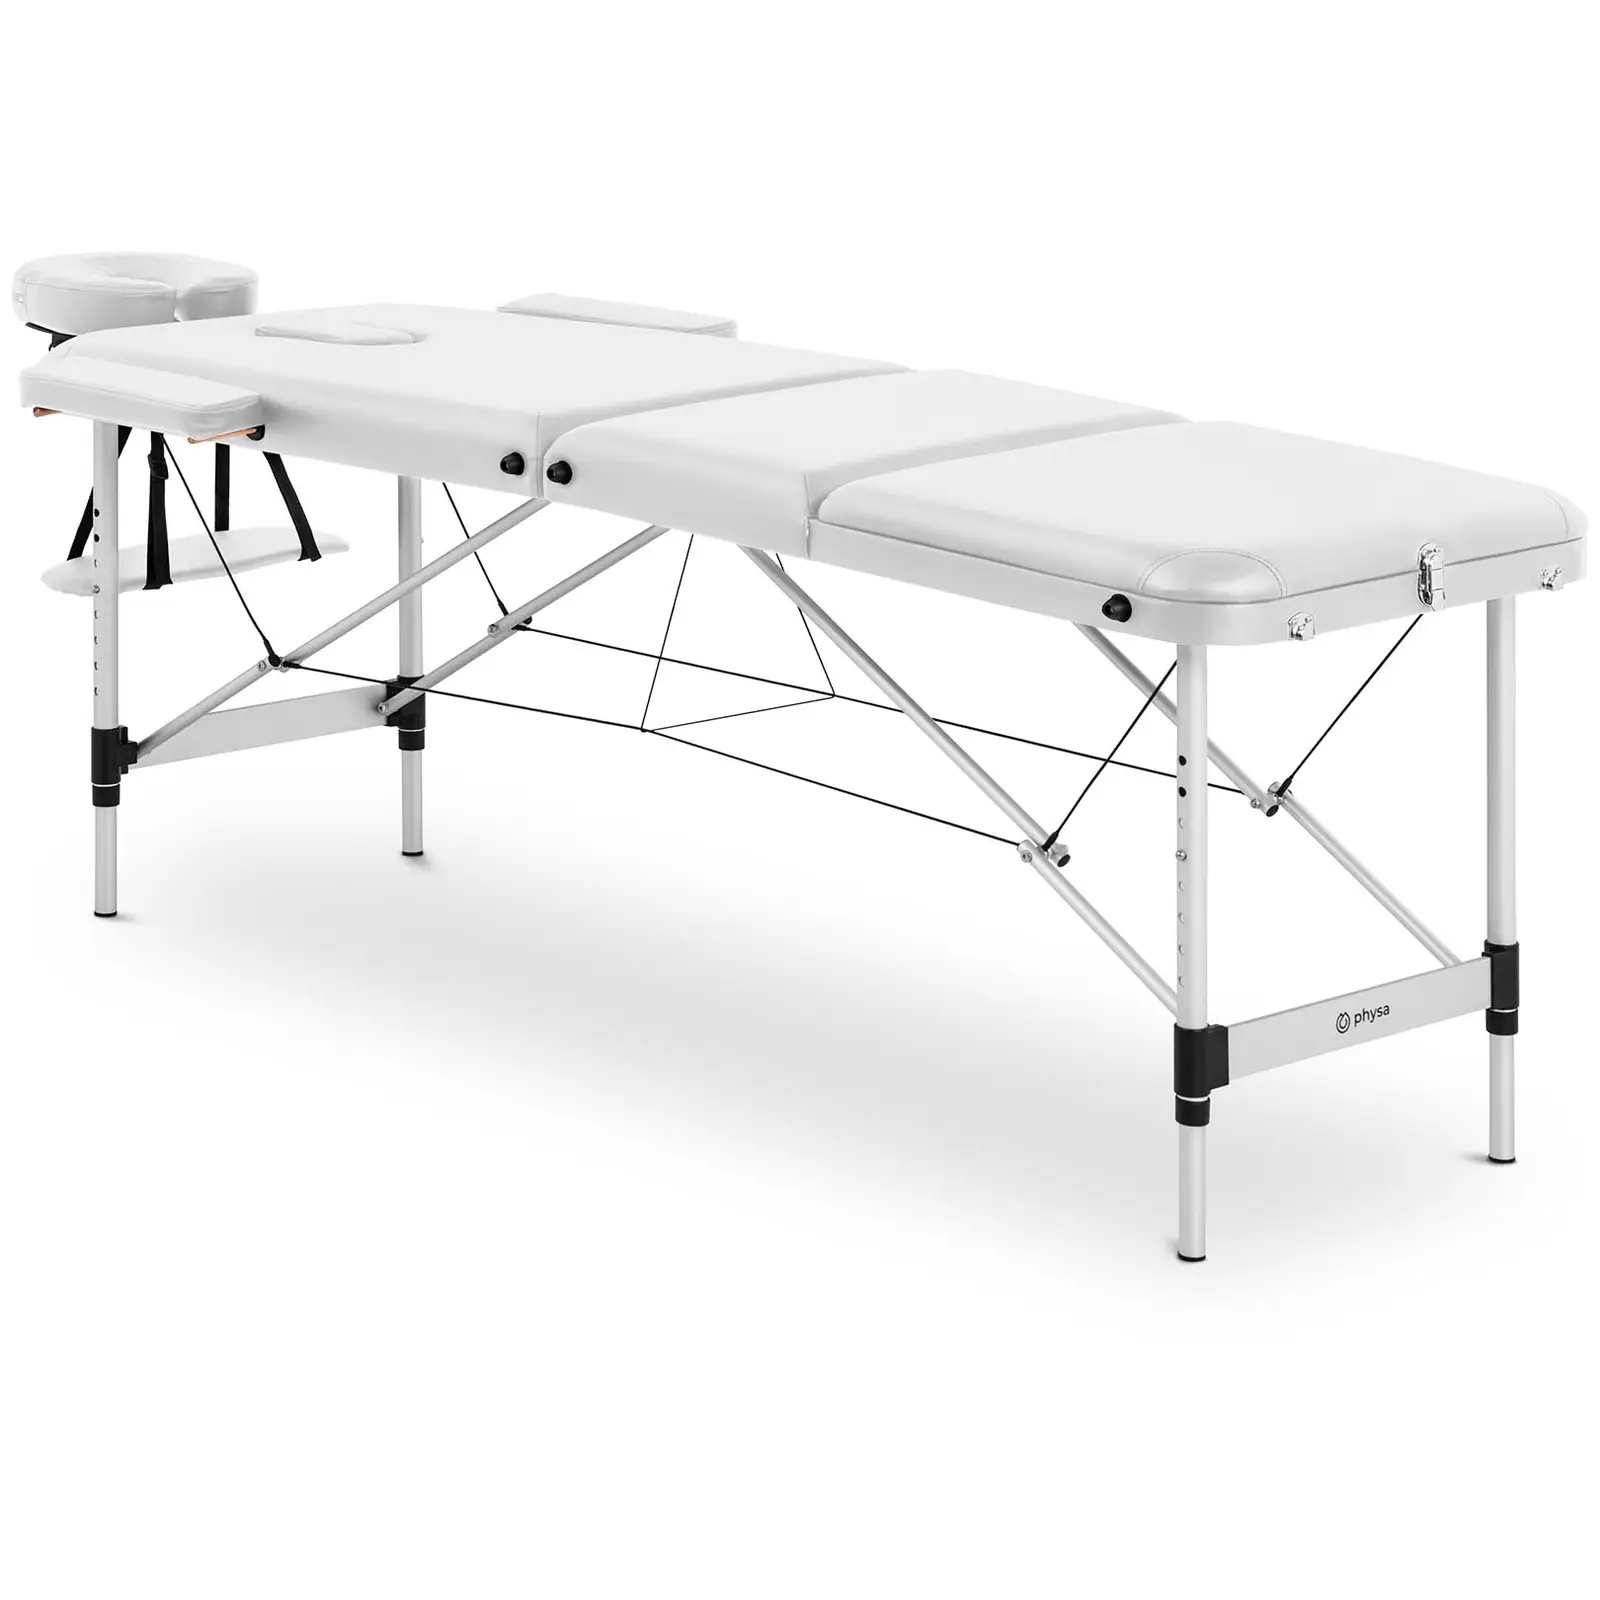 Sklopivi stol za masažu - 185 x 60 x 59 cm - 180 kg - bijeli